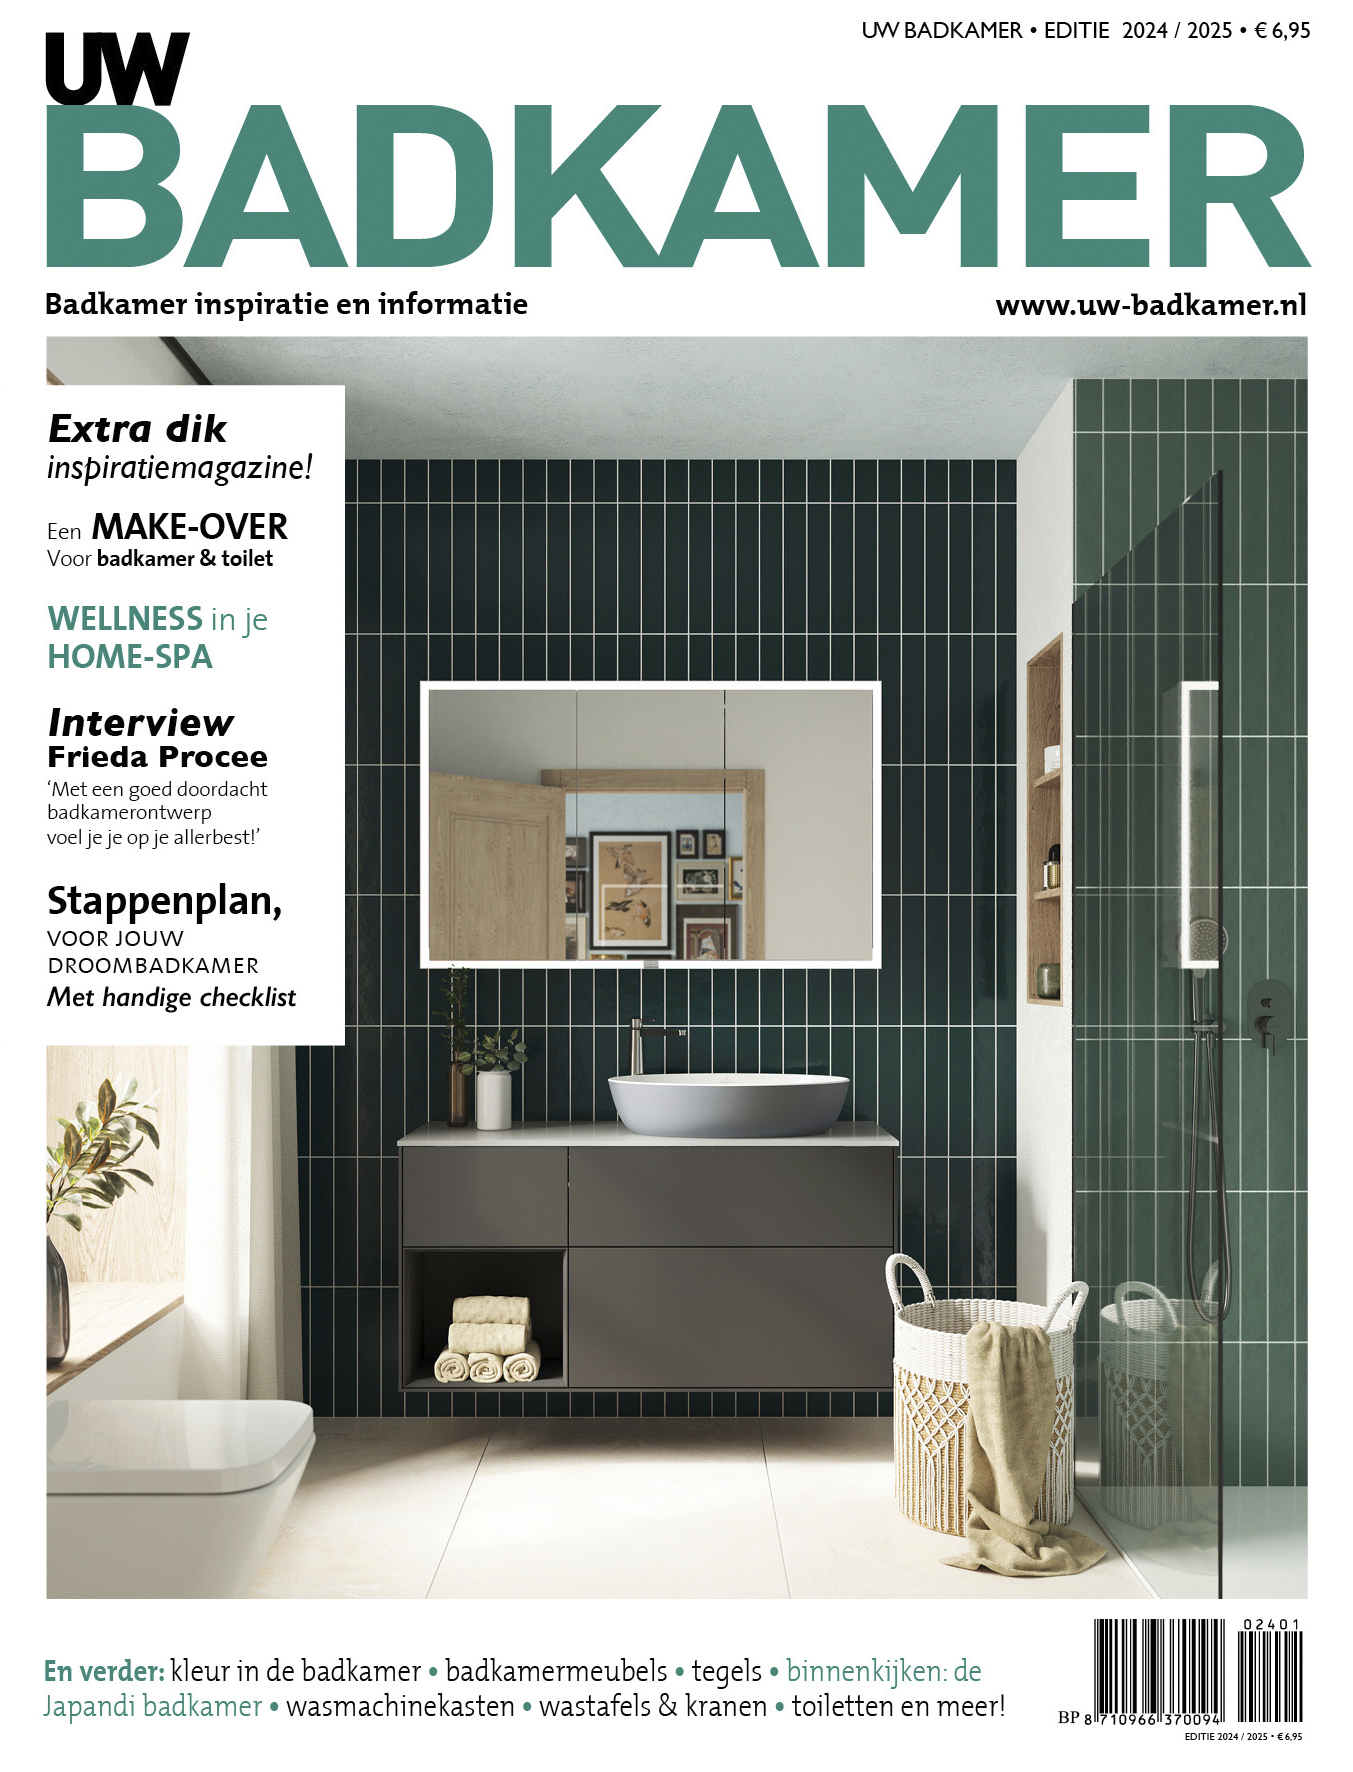 FotoNieuwste badkamermagazine: inspiratie bij het verbouwen van de badkamer